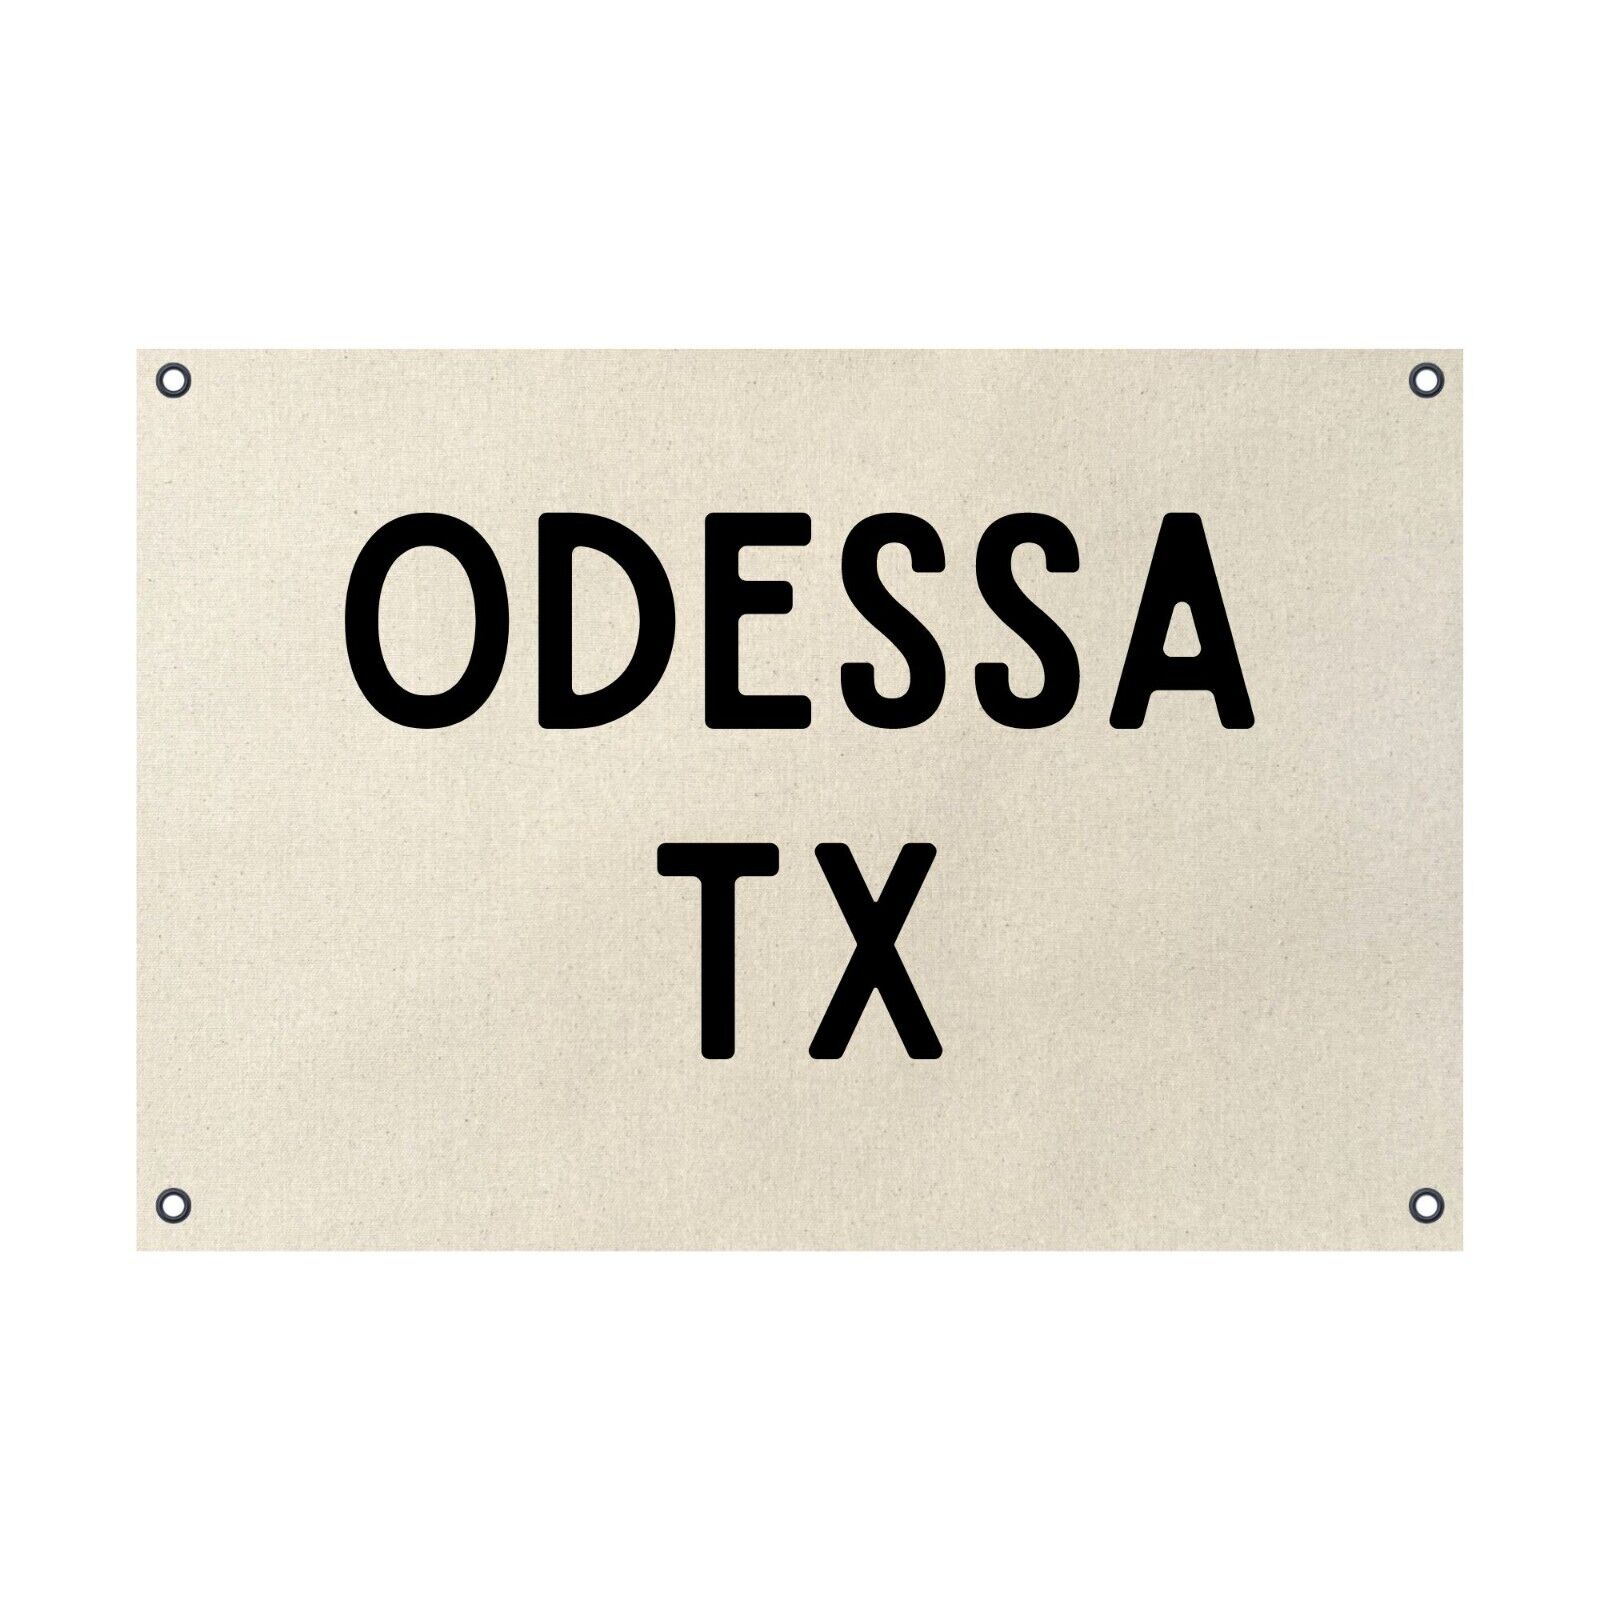 Odessa Texas TX Natural Cotton Duck Canvas Poster 24x36